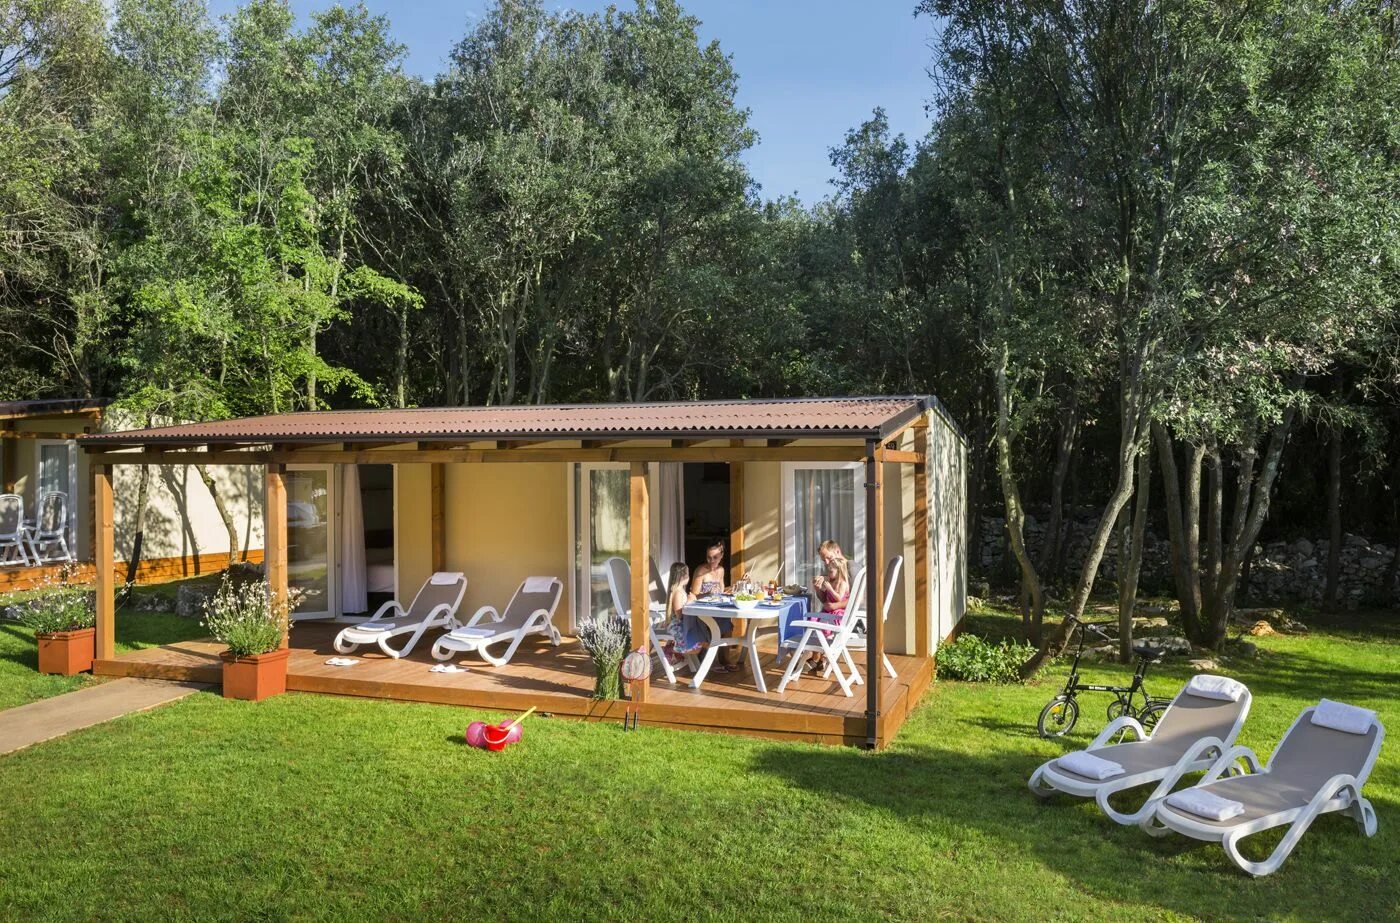 Хорватия кемпинг. Ровинь передвижные дома для отдыха. Camping Home. Camping Polari Rovinj Istria Croatia fkk. Home camp